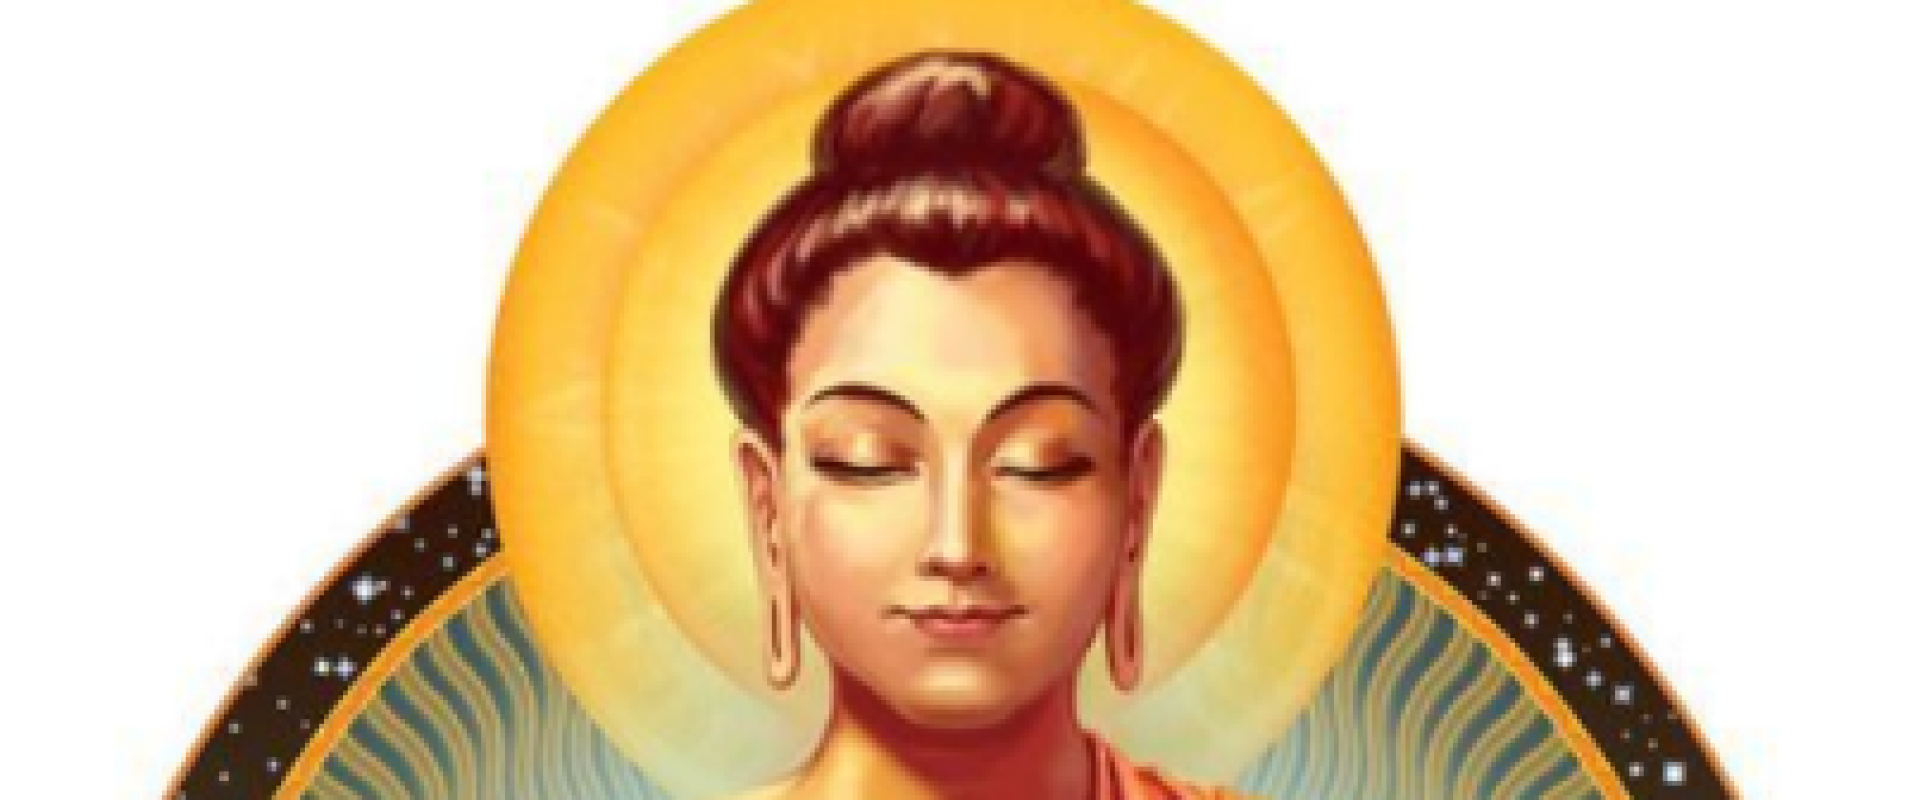 Boodschap van lichtmeester Boeddha: Zen in het centrum van jezelf.